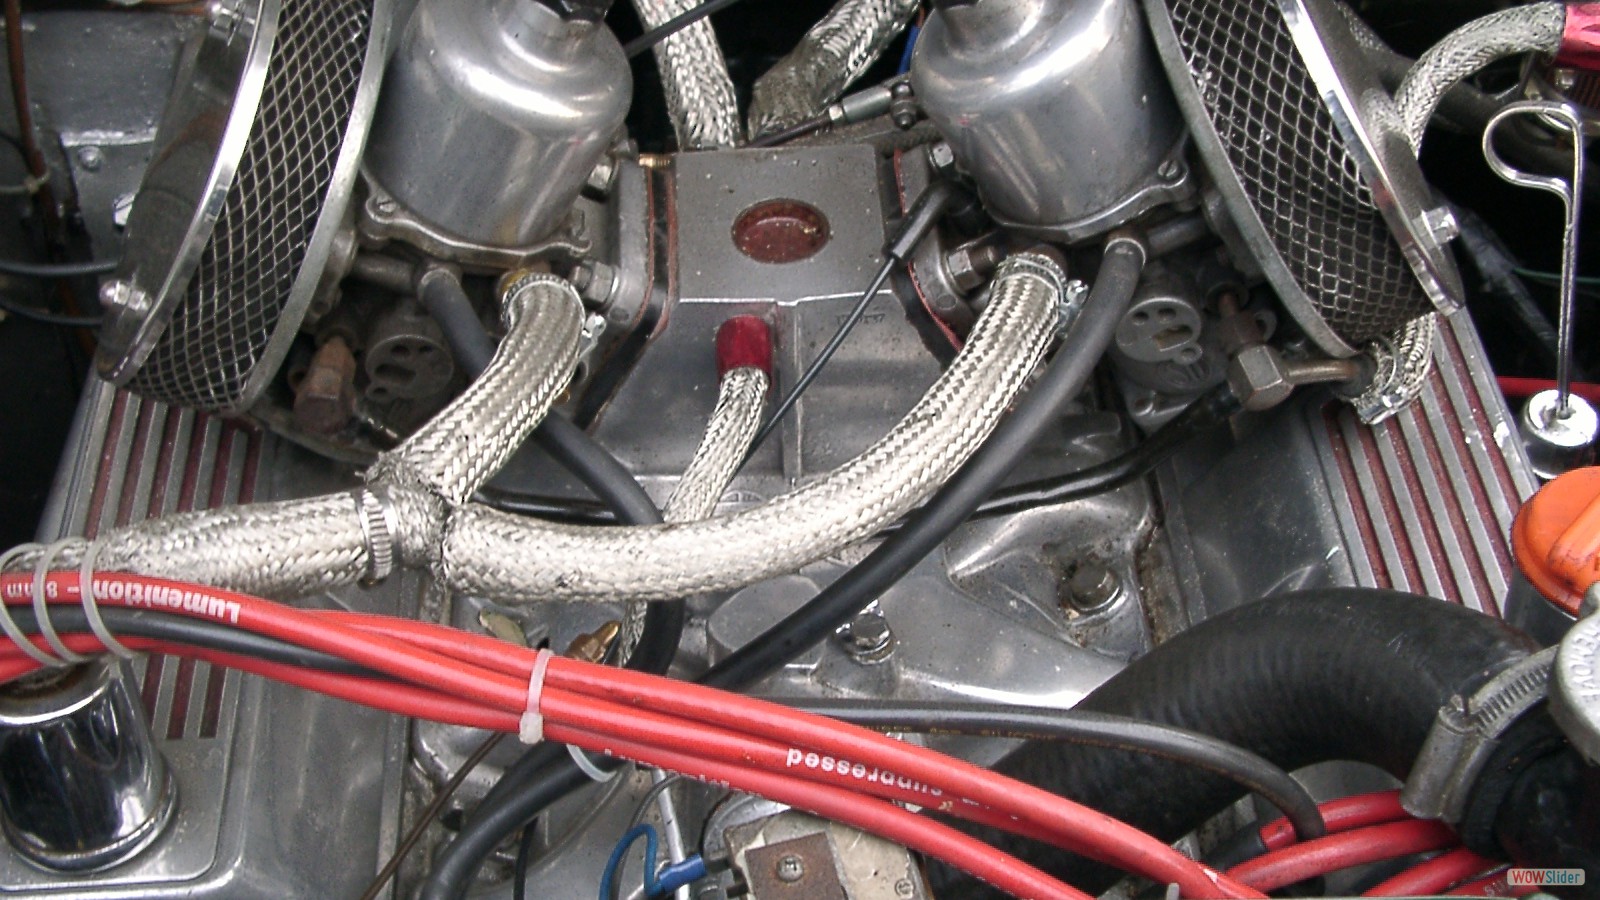 Merlin mit Rover V8 Motor